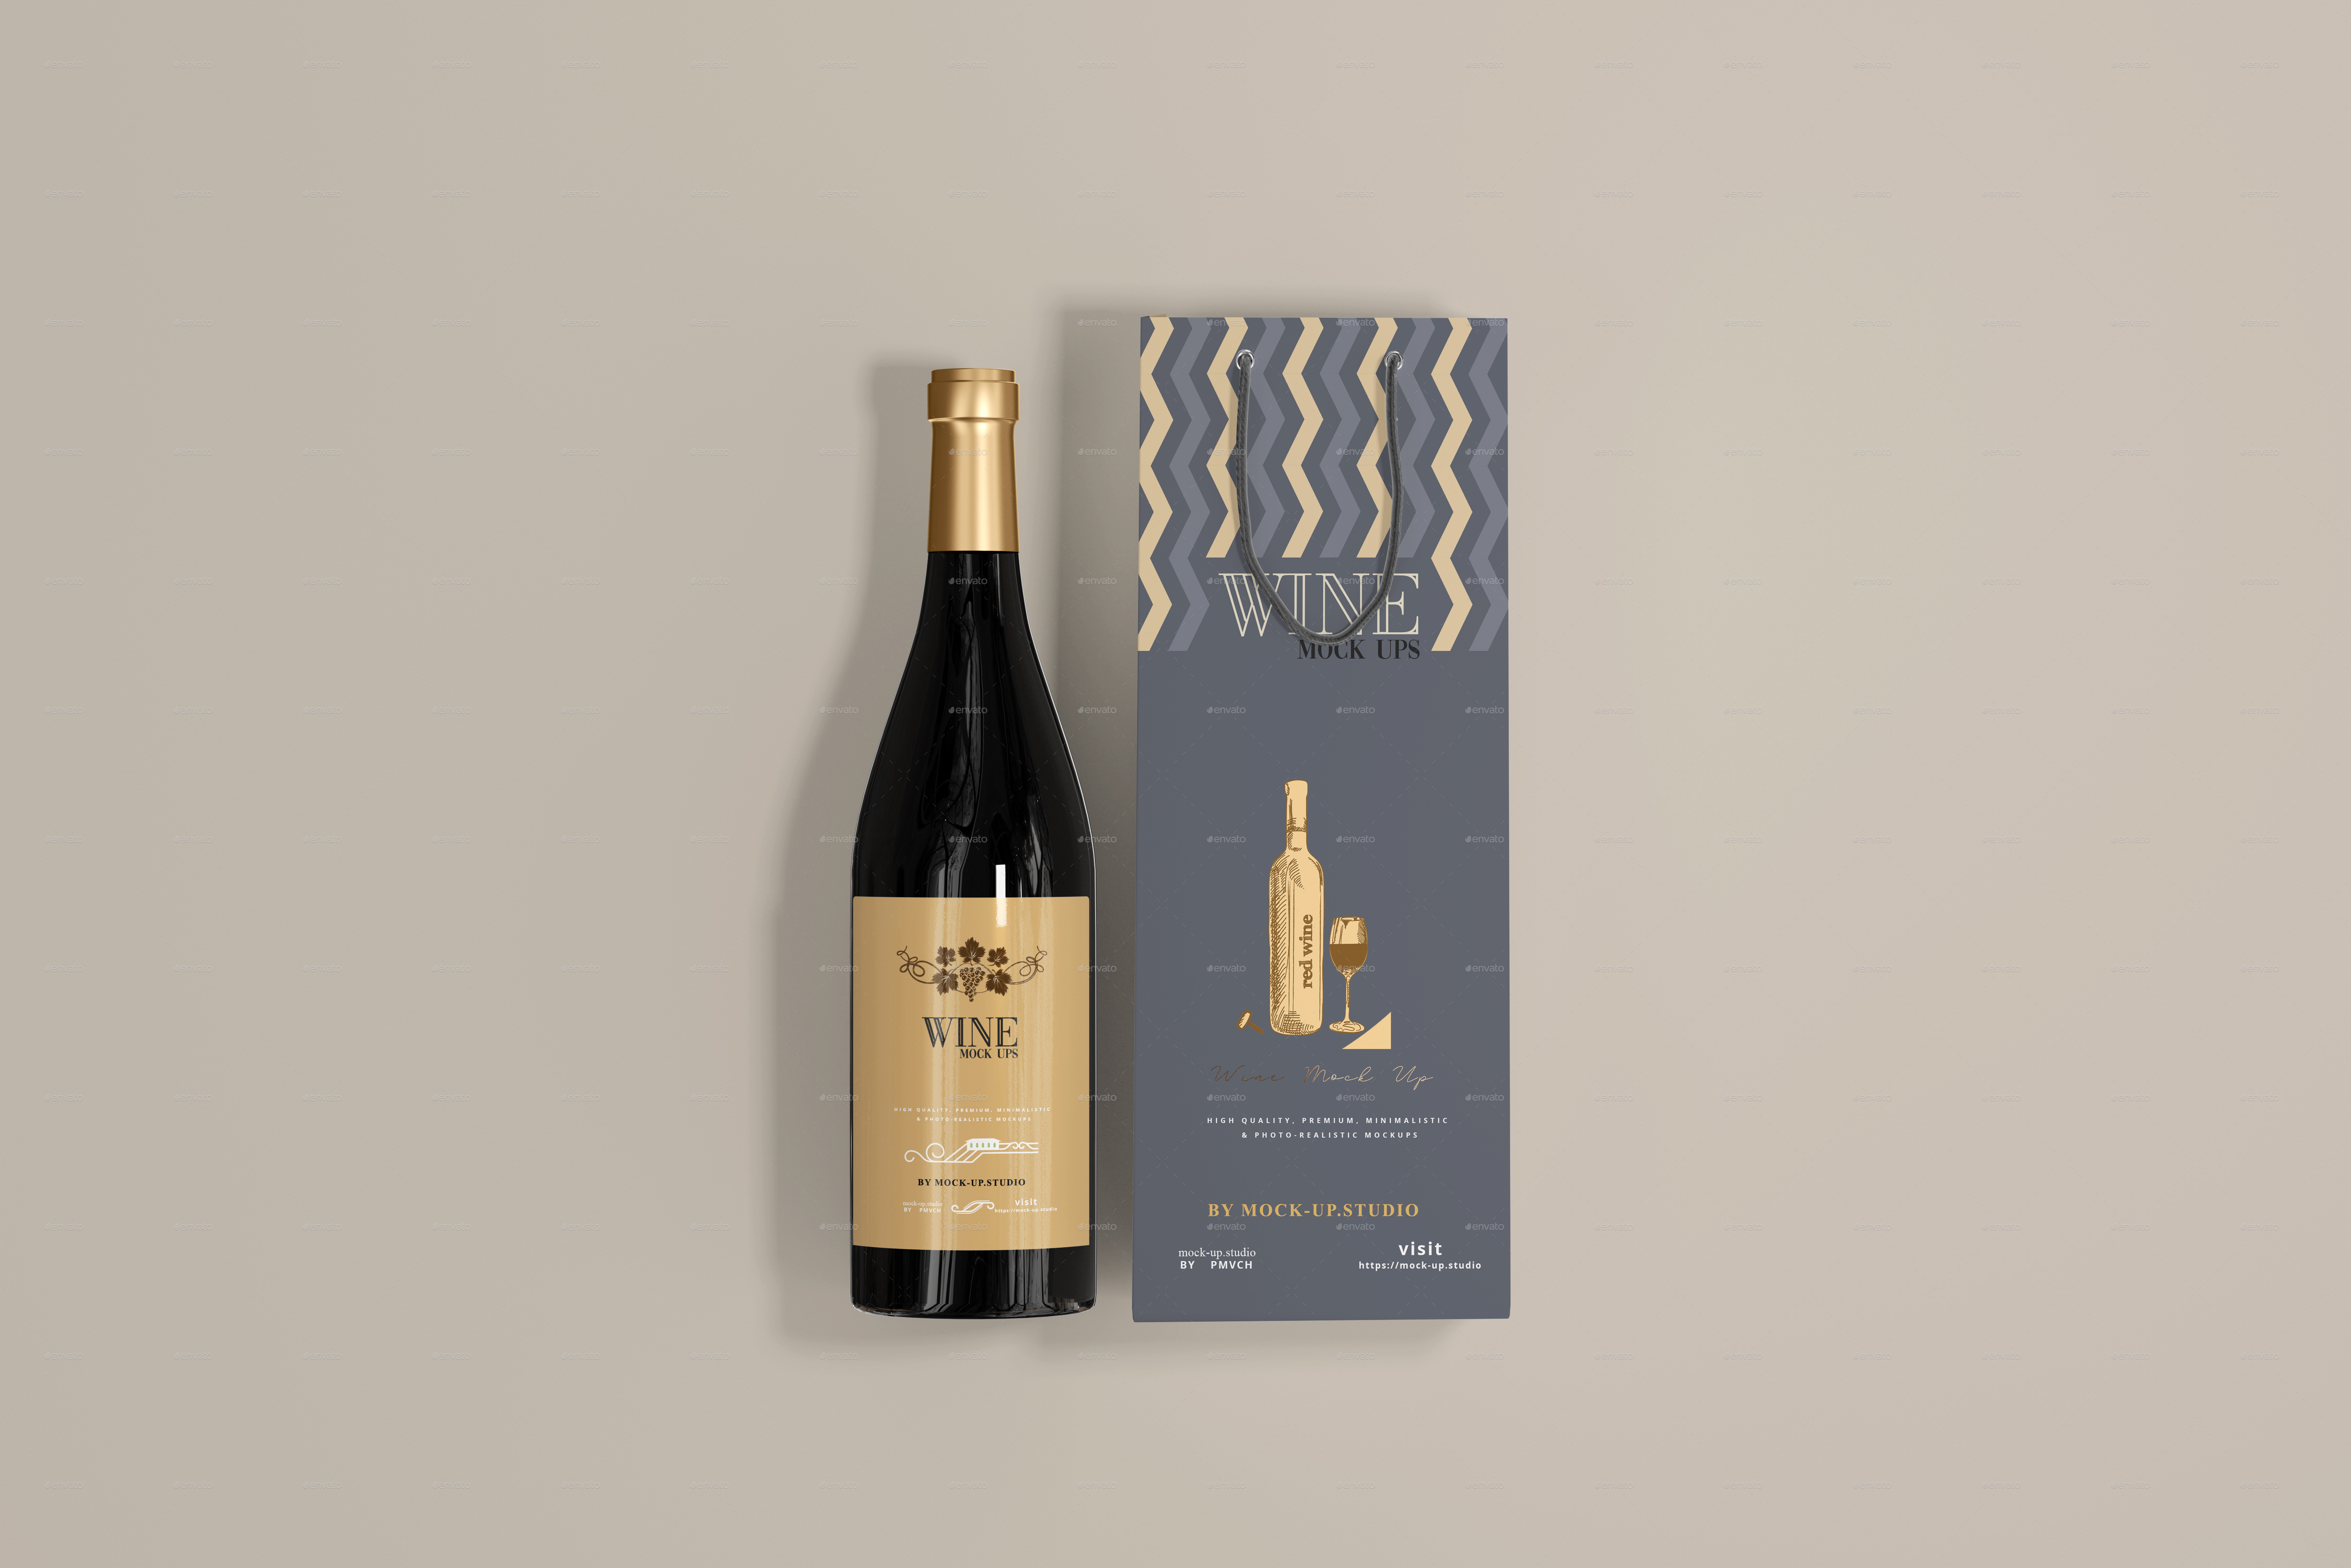 Download Wine Bottles & Bag Mockups by mock-upstudio | GraphicRiver